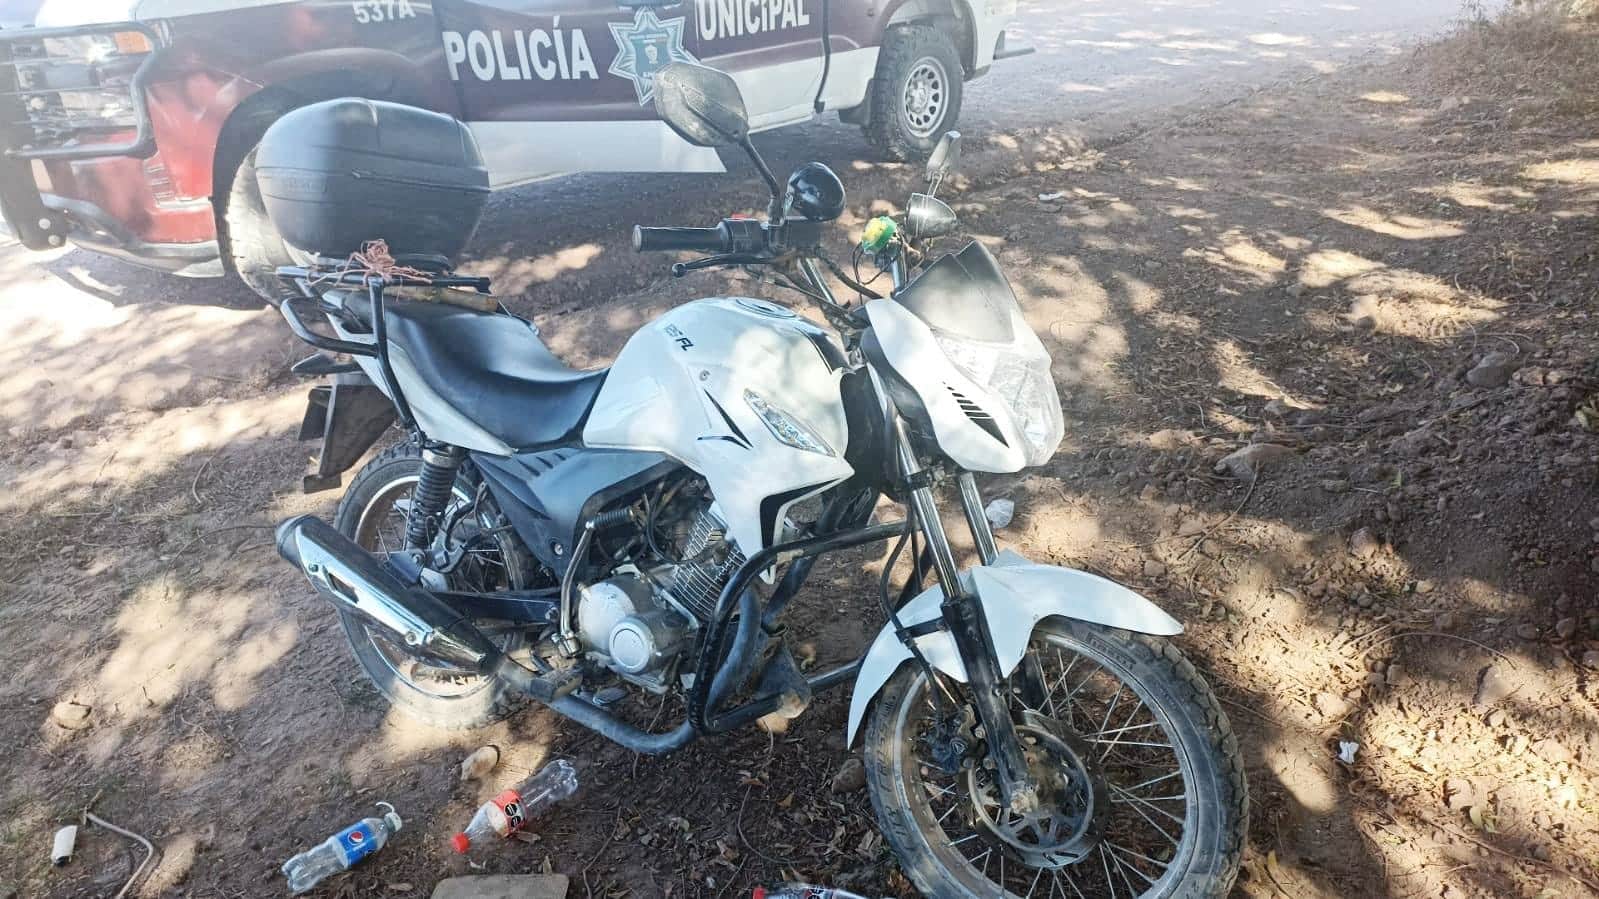 Municipales recuperan motocicleta robada en Los Mochis